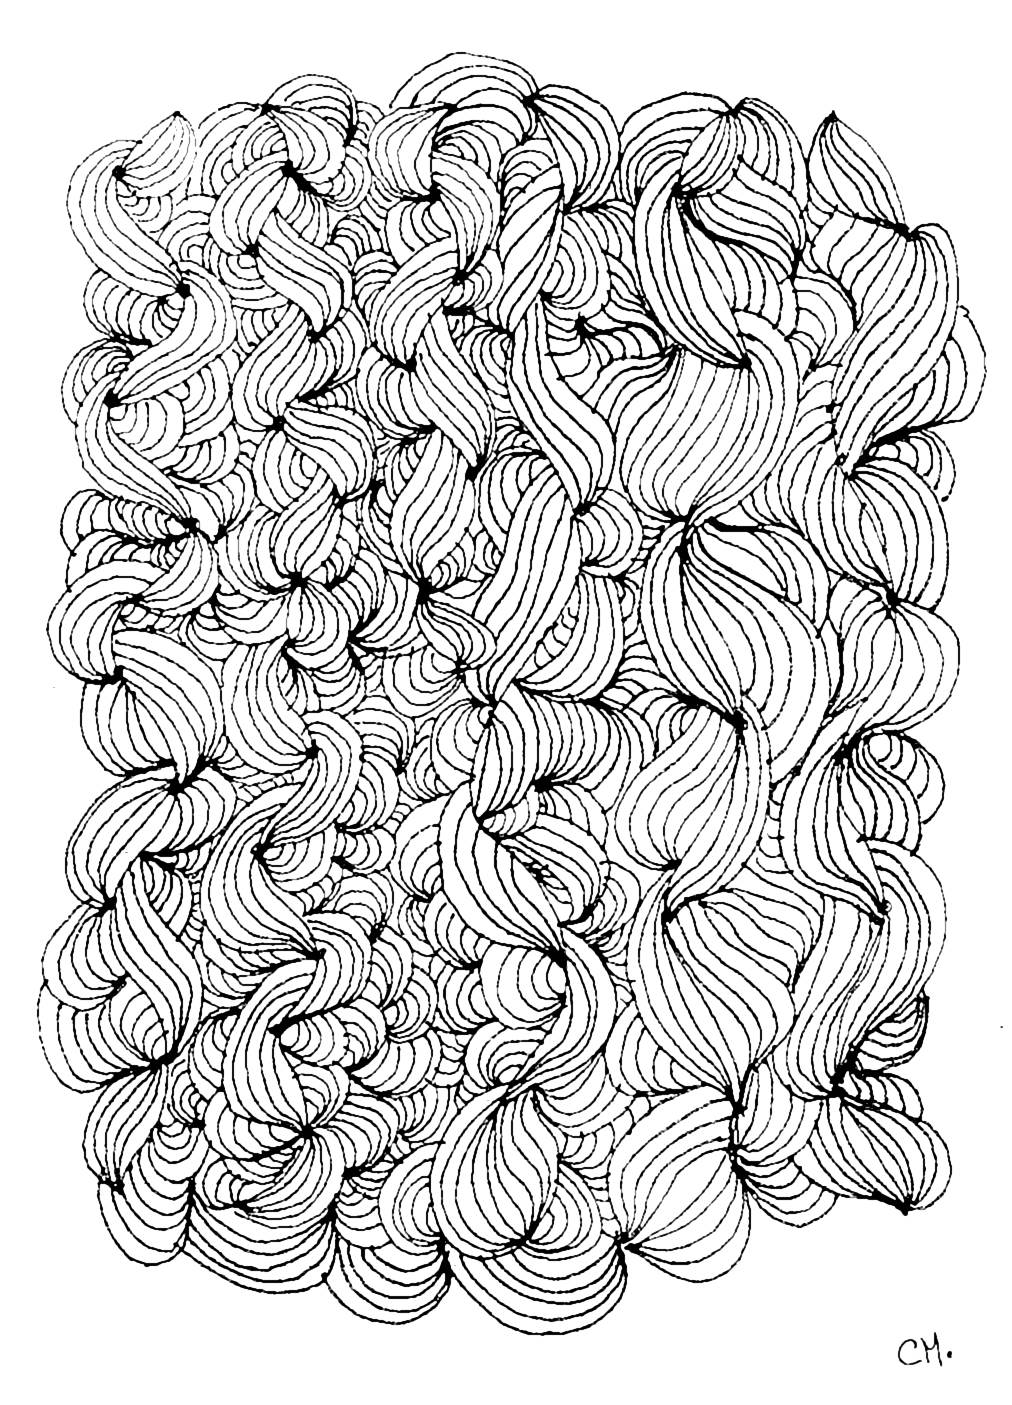 Desenho original Zentangle, para ser colorido, por Cathy M